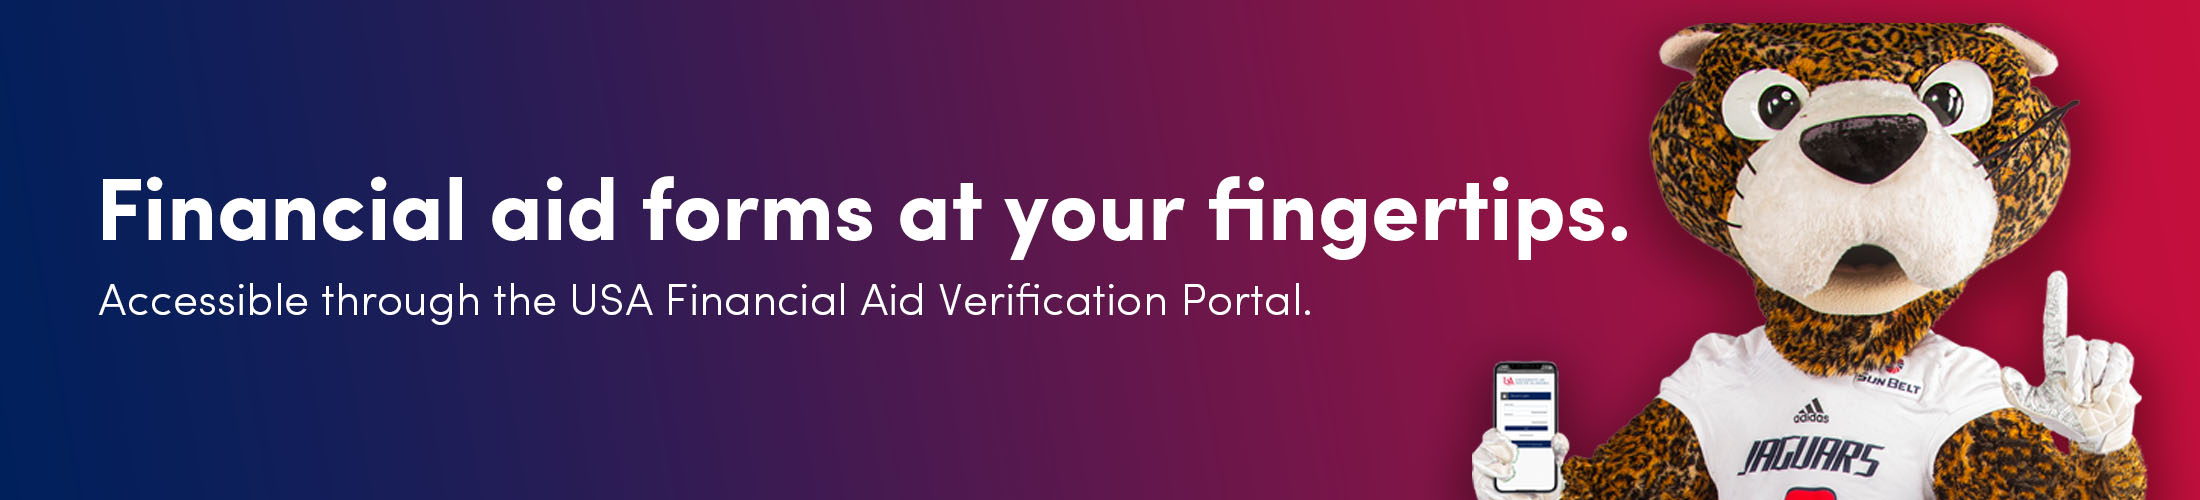 老司机福利网paw with the text Financial aid forms at your fingertips.